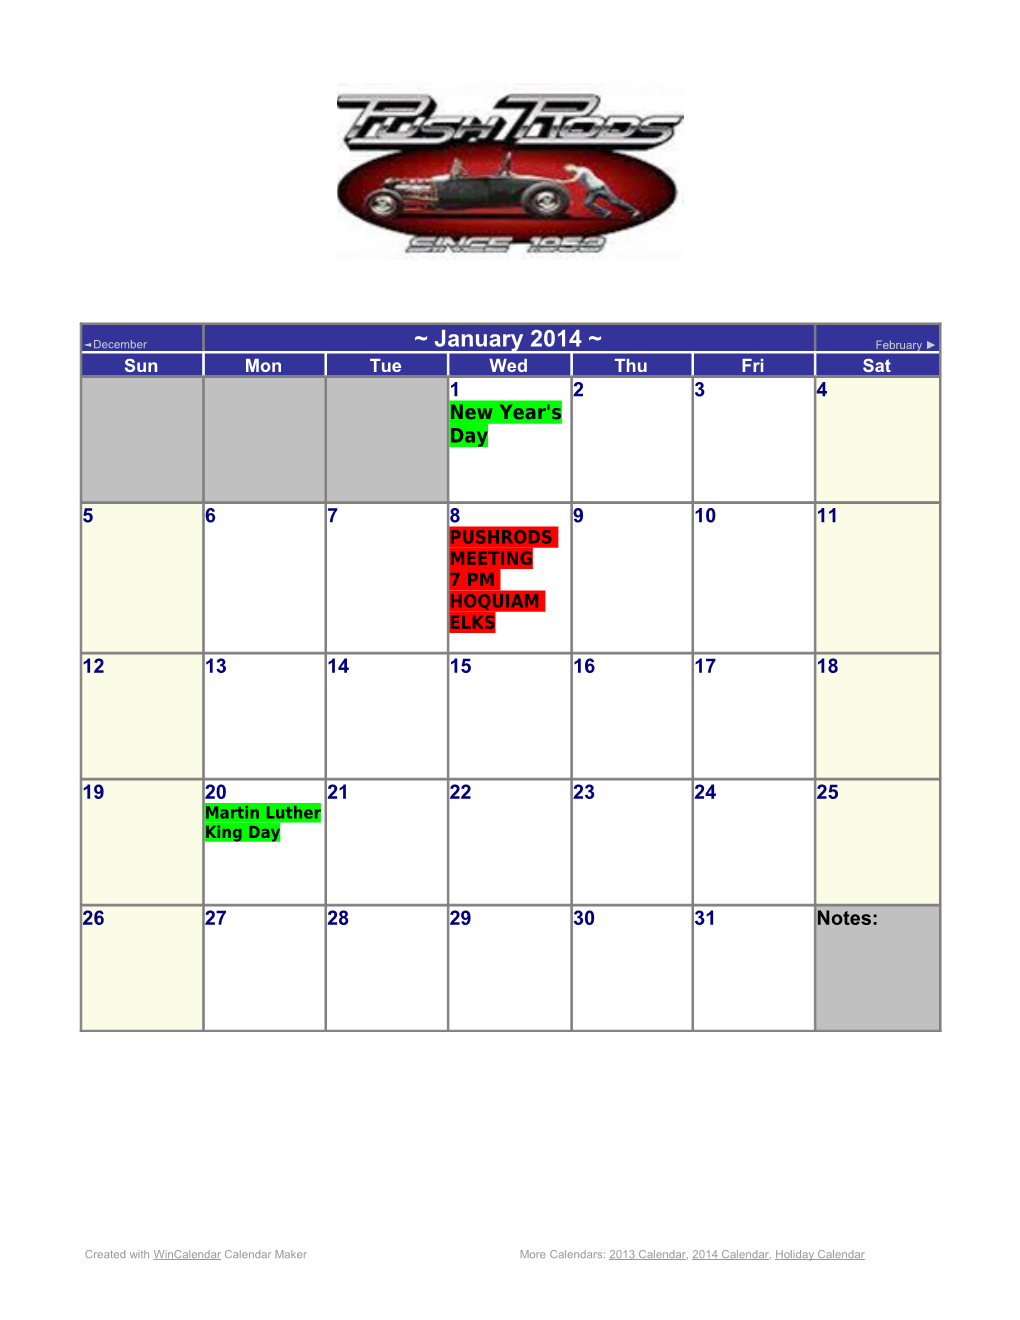 More Calendars from Wincalendar: 2013, 2014, Online Calendar